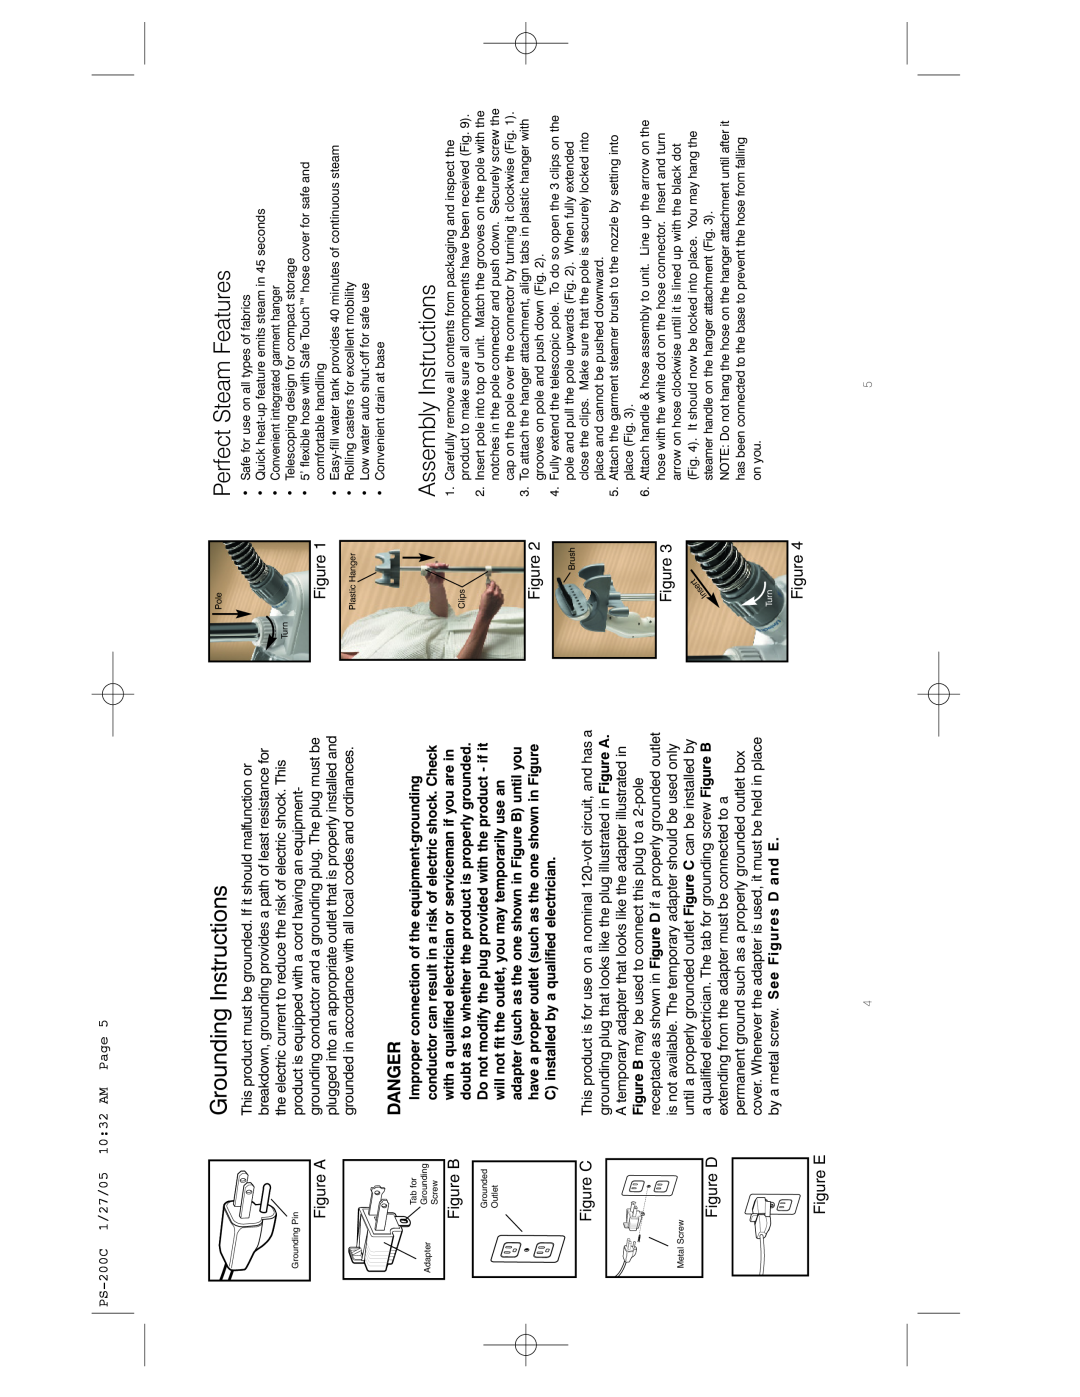 HoMedics IBPS200-C instruction manual Danger, Figure A, Figure B, Figure C, Figure D Figure E, PS-200C1/27/05 10 32 AM Page 